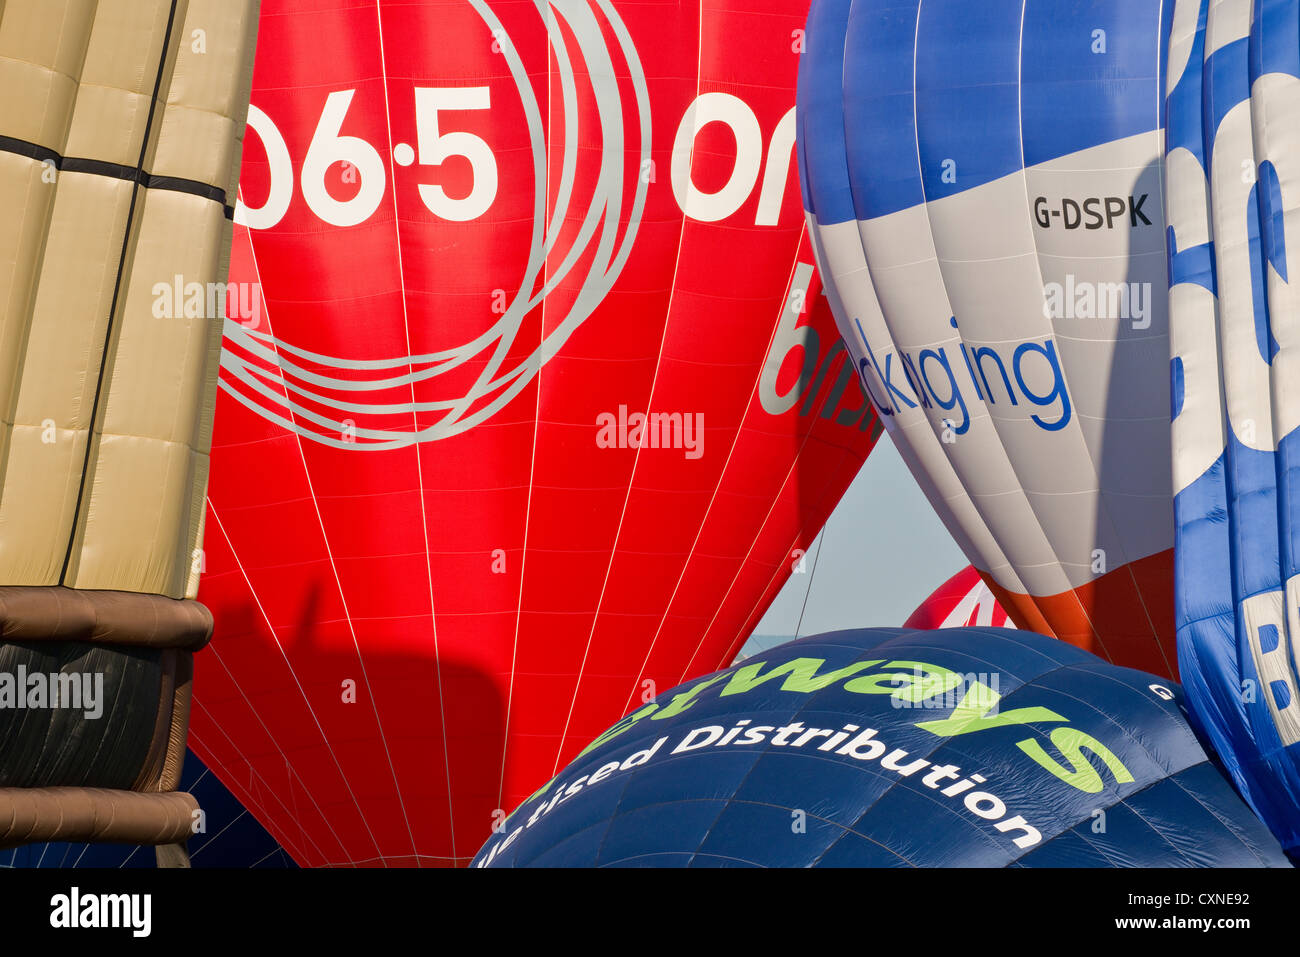 Group of hot air balloons at Bristol Balloon Fiesta Stock Photo